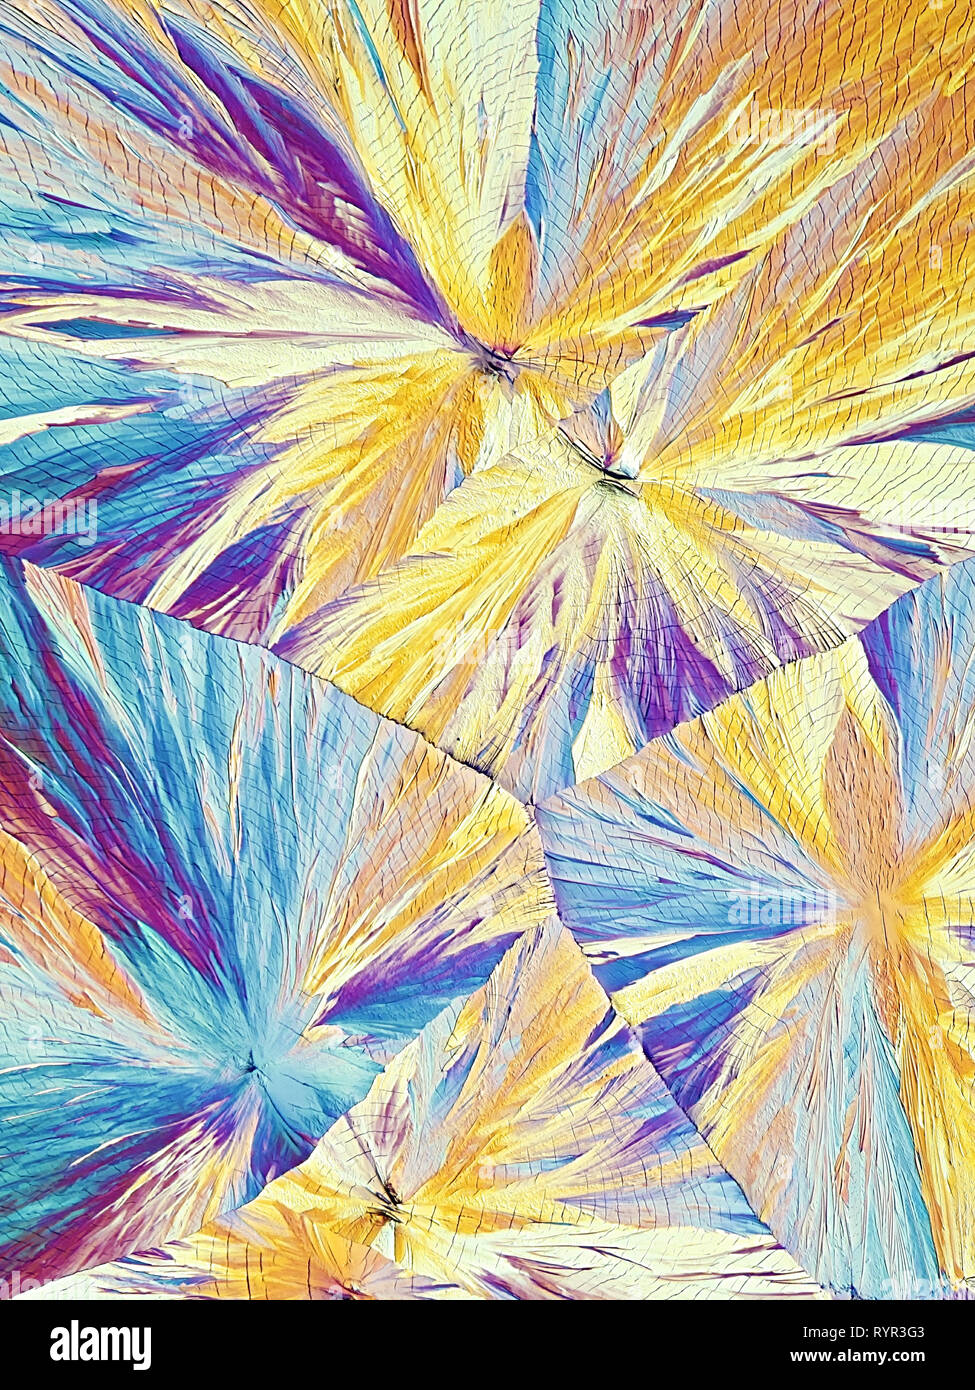 Kunst und Wissenschaft. Dies ist Ascorbinsäure, bekannt als Vitamin C, in kristallisierter Form fotografiert bekannt Stockfoto